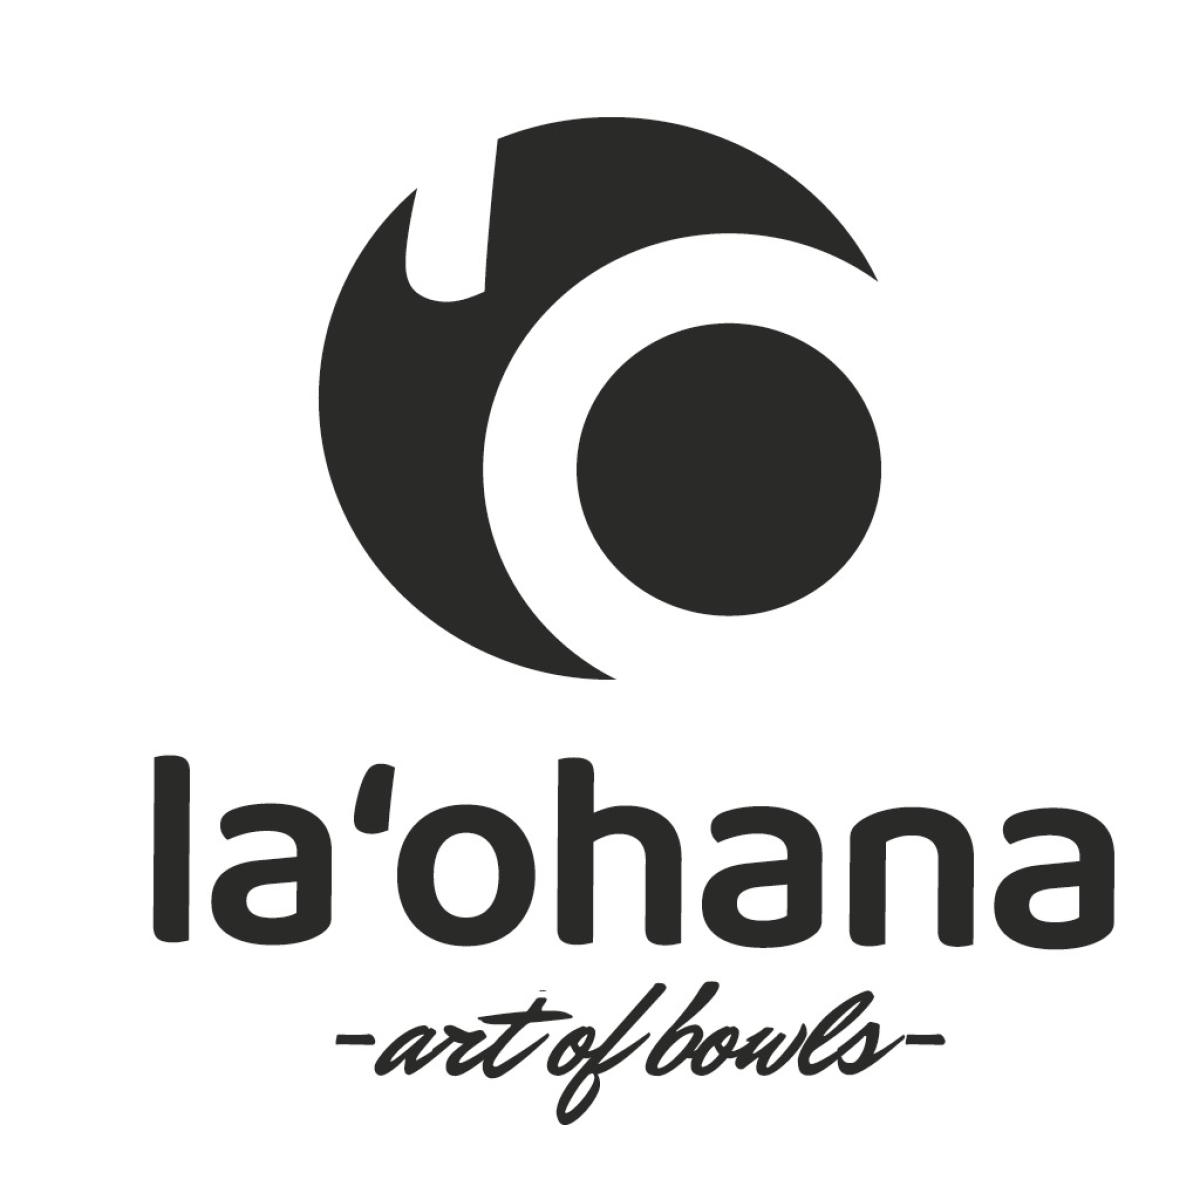 La‘ohana – art of bowls